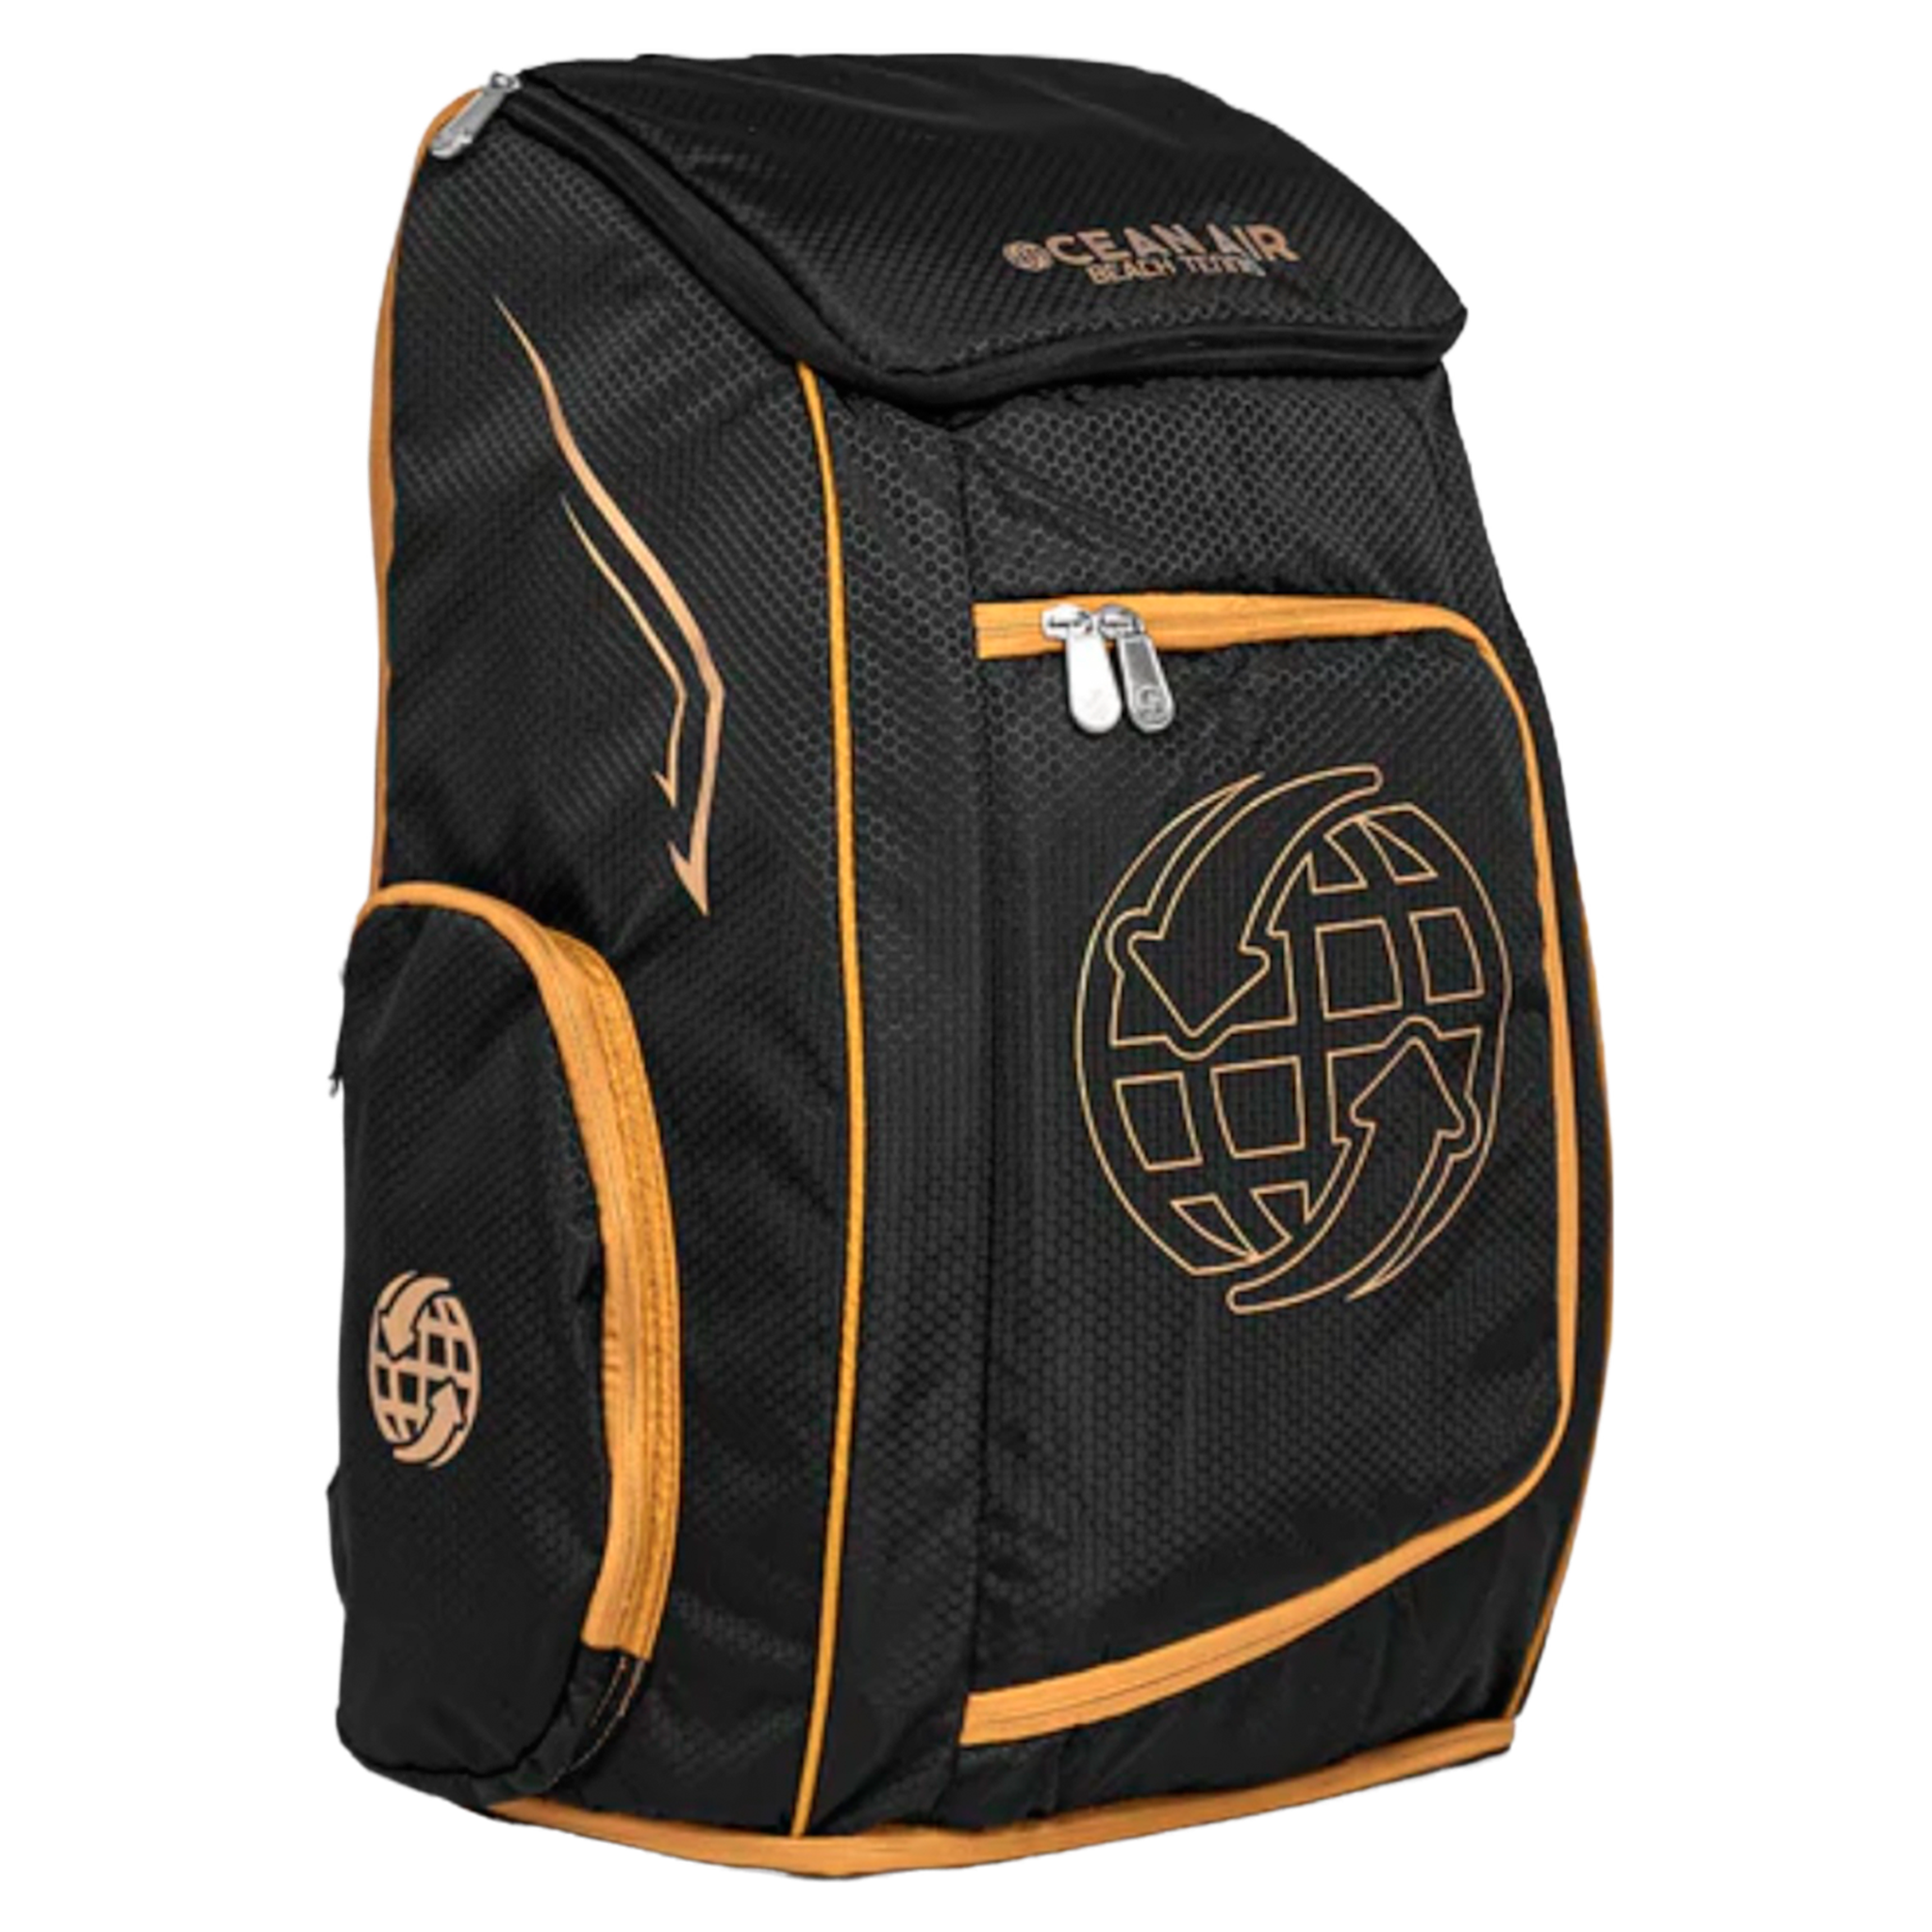 Ocean Air Pro BT Black Backpack